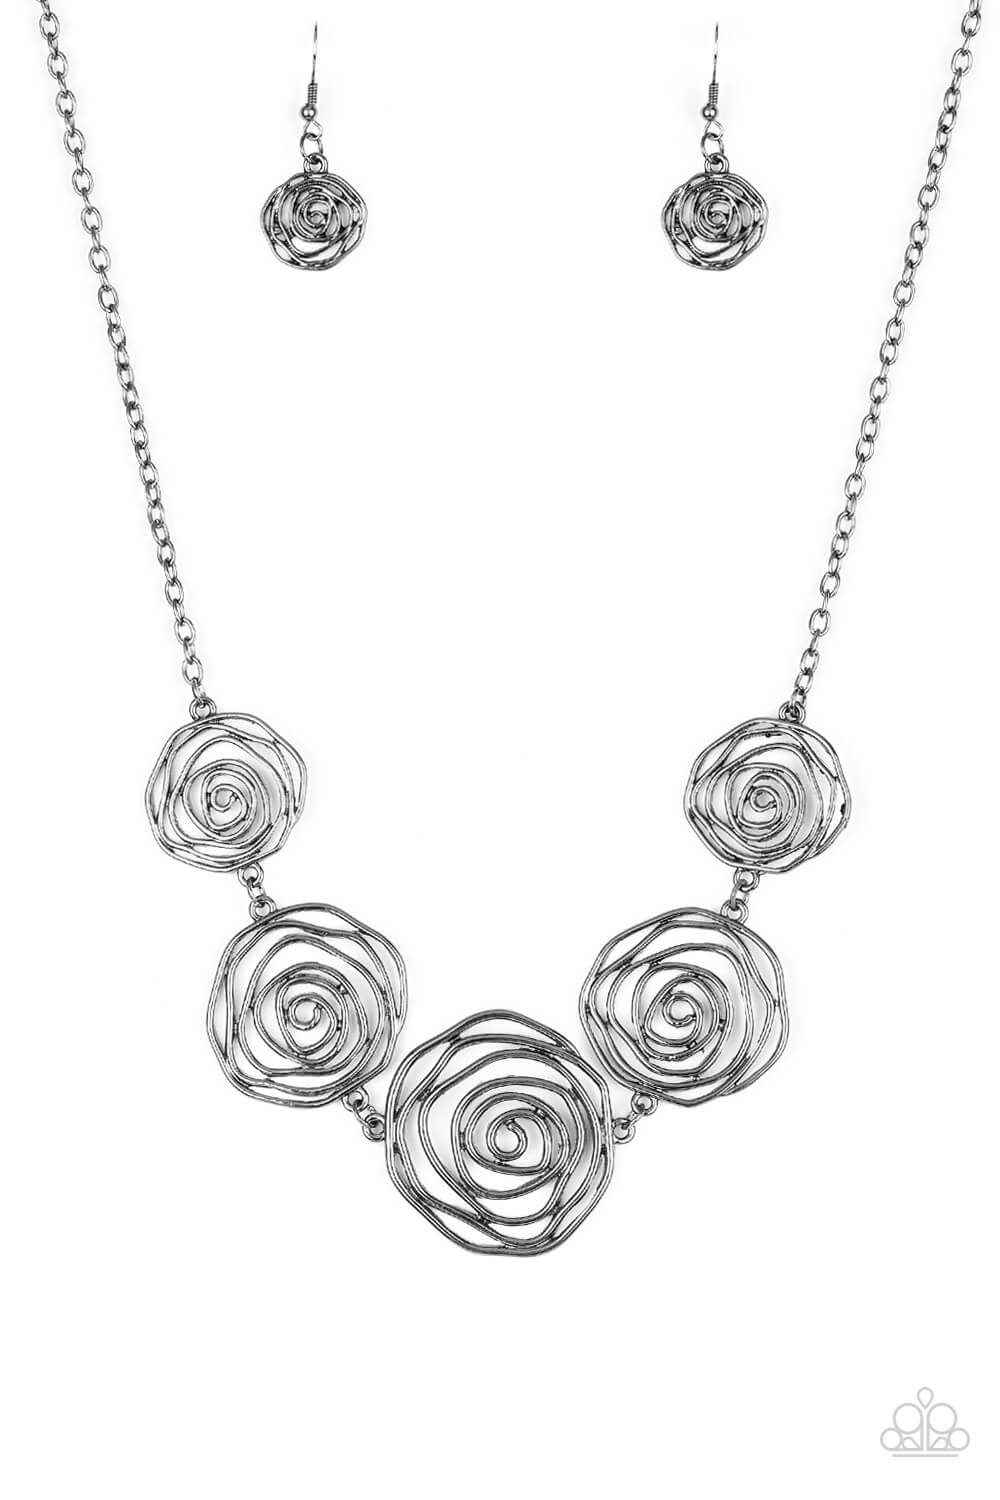 Rosy Rosette - Black Rosebud Frame Collar Necklace Set & Bracelet Combo - Princess Glam Shop